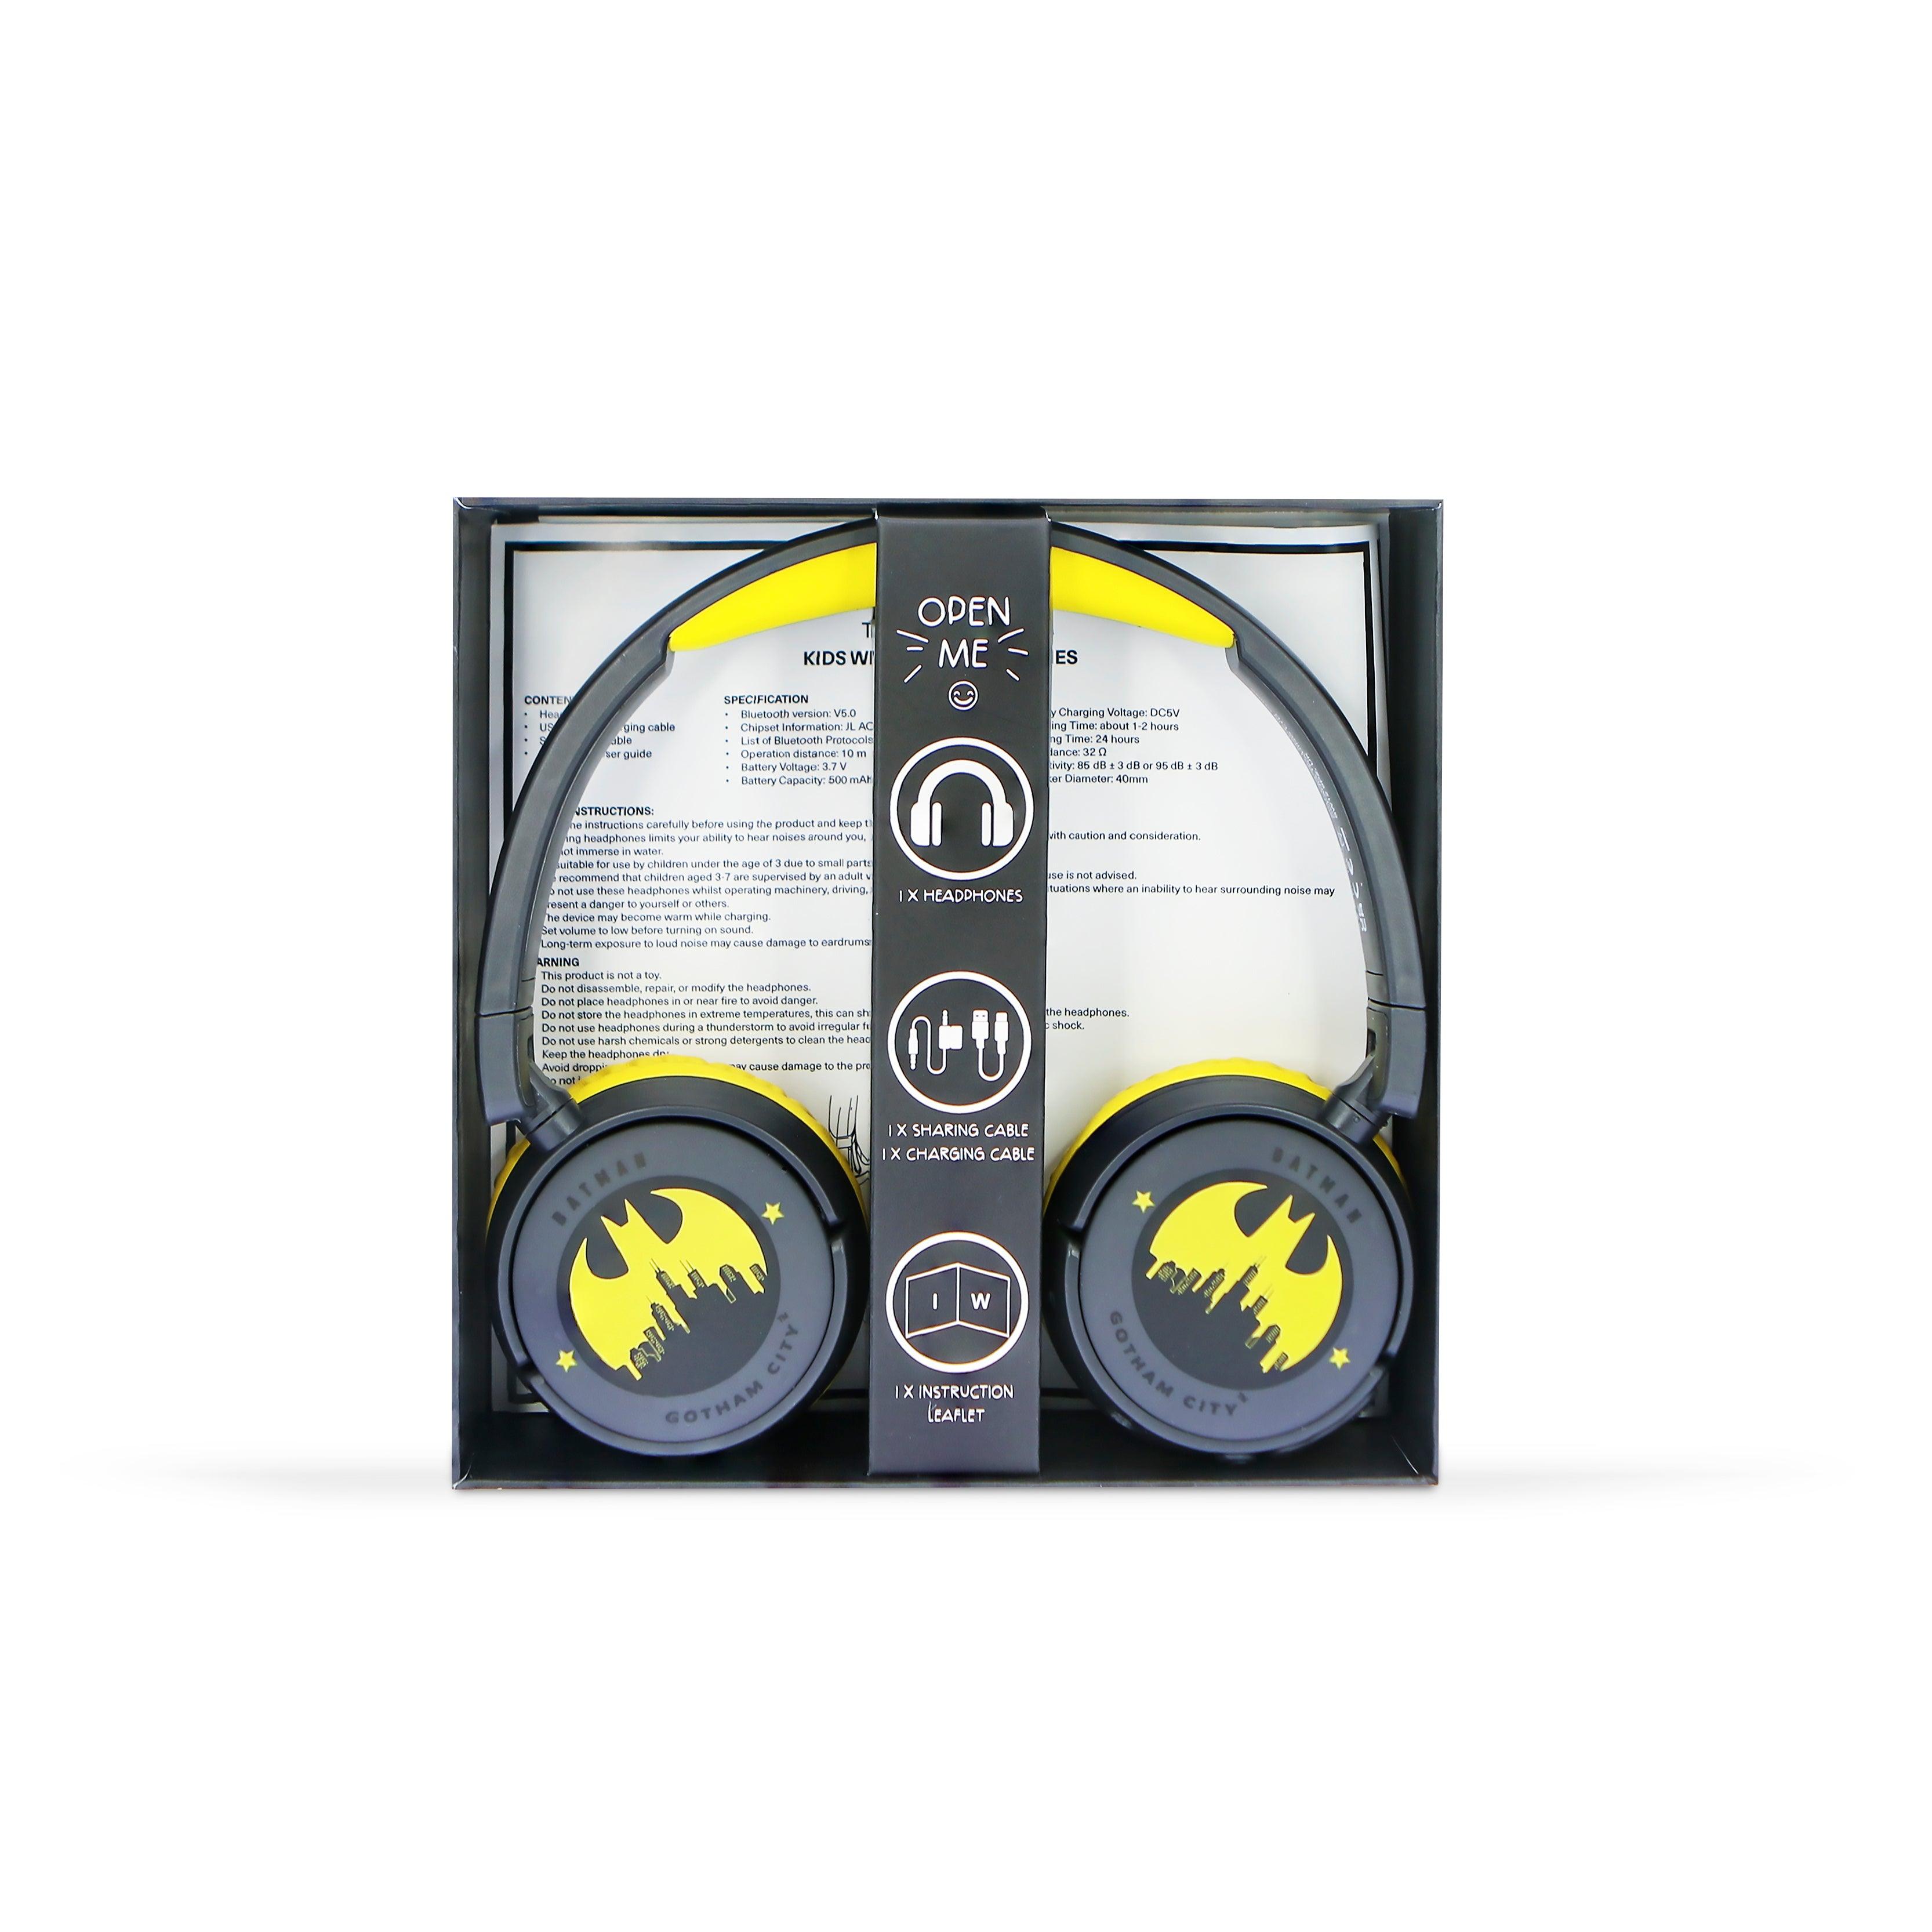 Batman Kids Wireless Headphones - Grey - childrensheadphones.co.uk